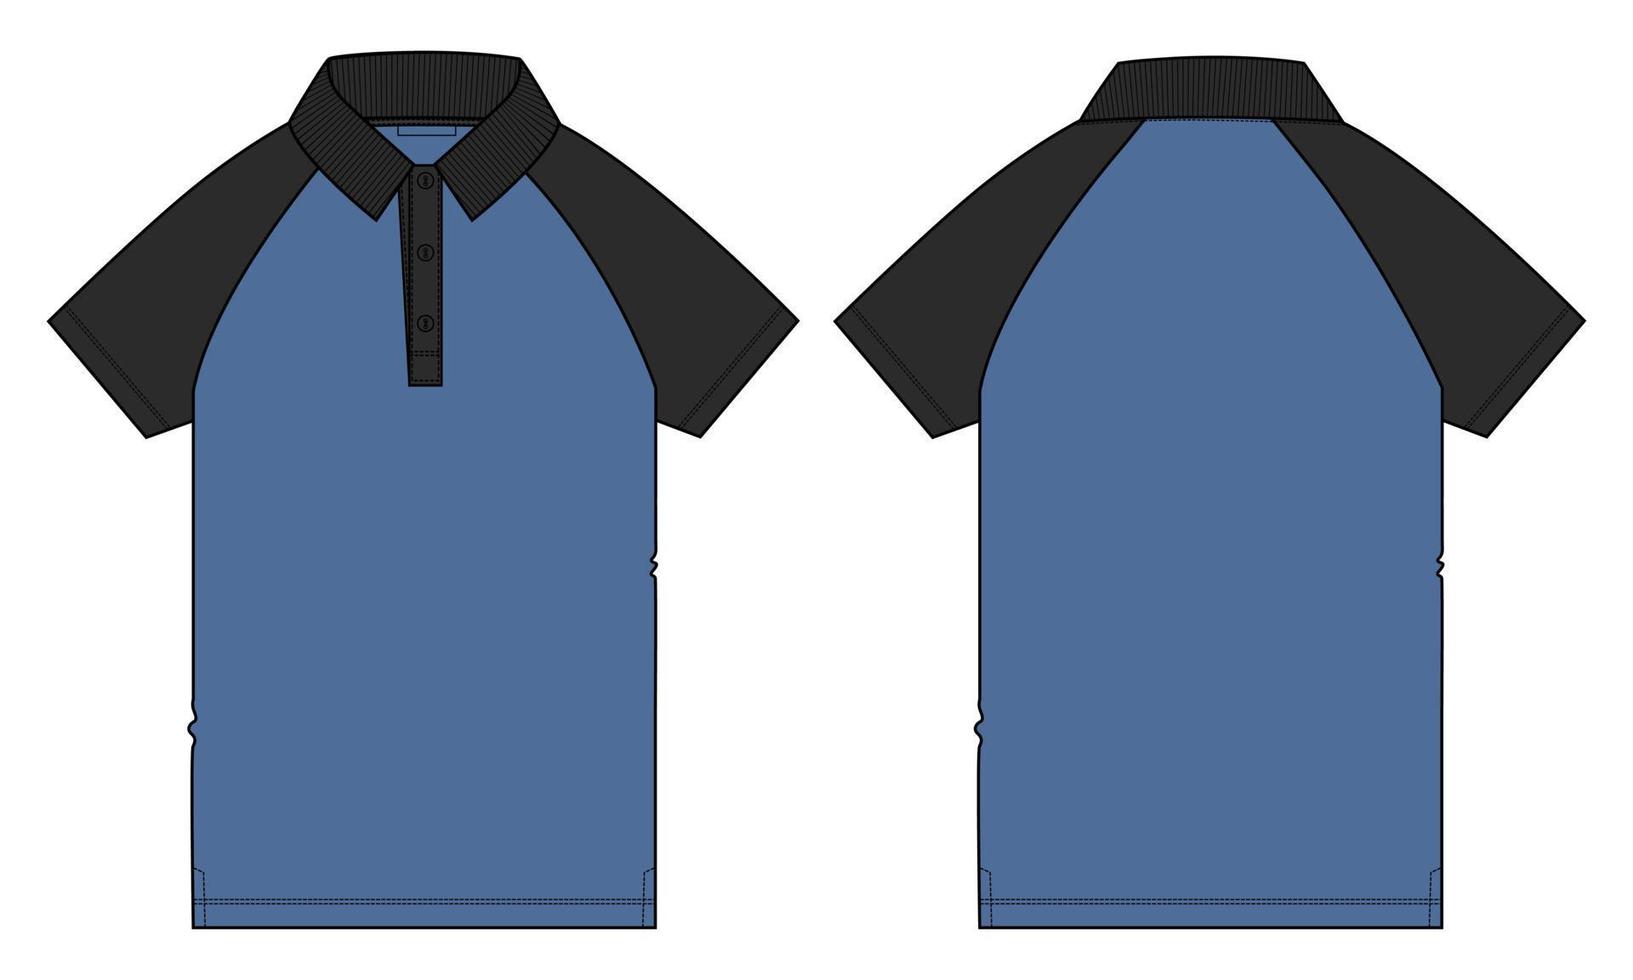 two tone zwarte en blauwe kleur raglan korte mouw poloshirt technische mode platte schets vector illustratie sjabloon voor- en achterkant uitzicht geïsoleerd op een witte achtergrond.